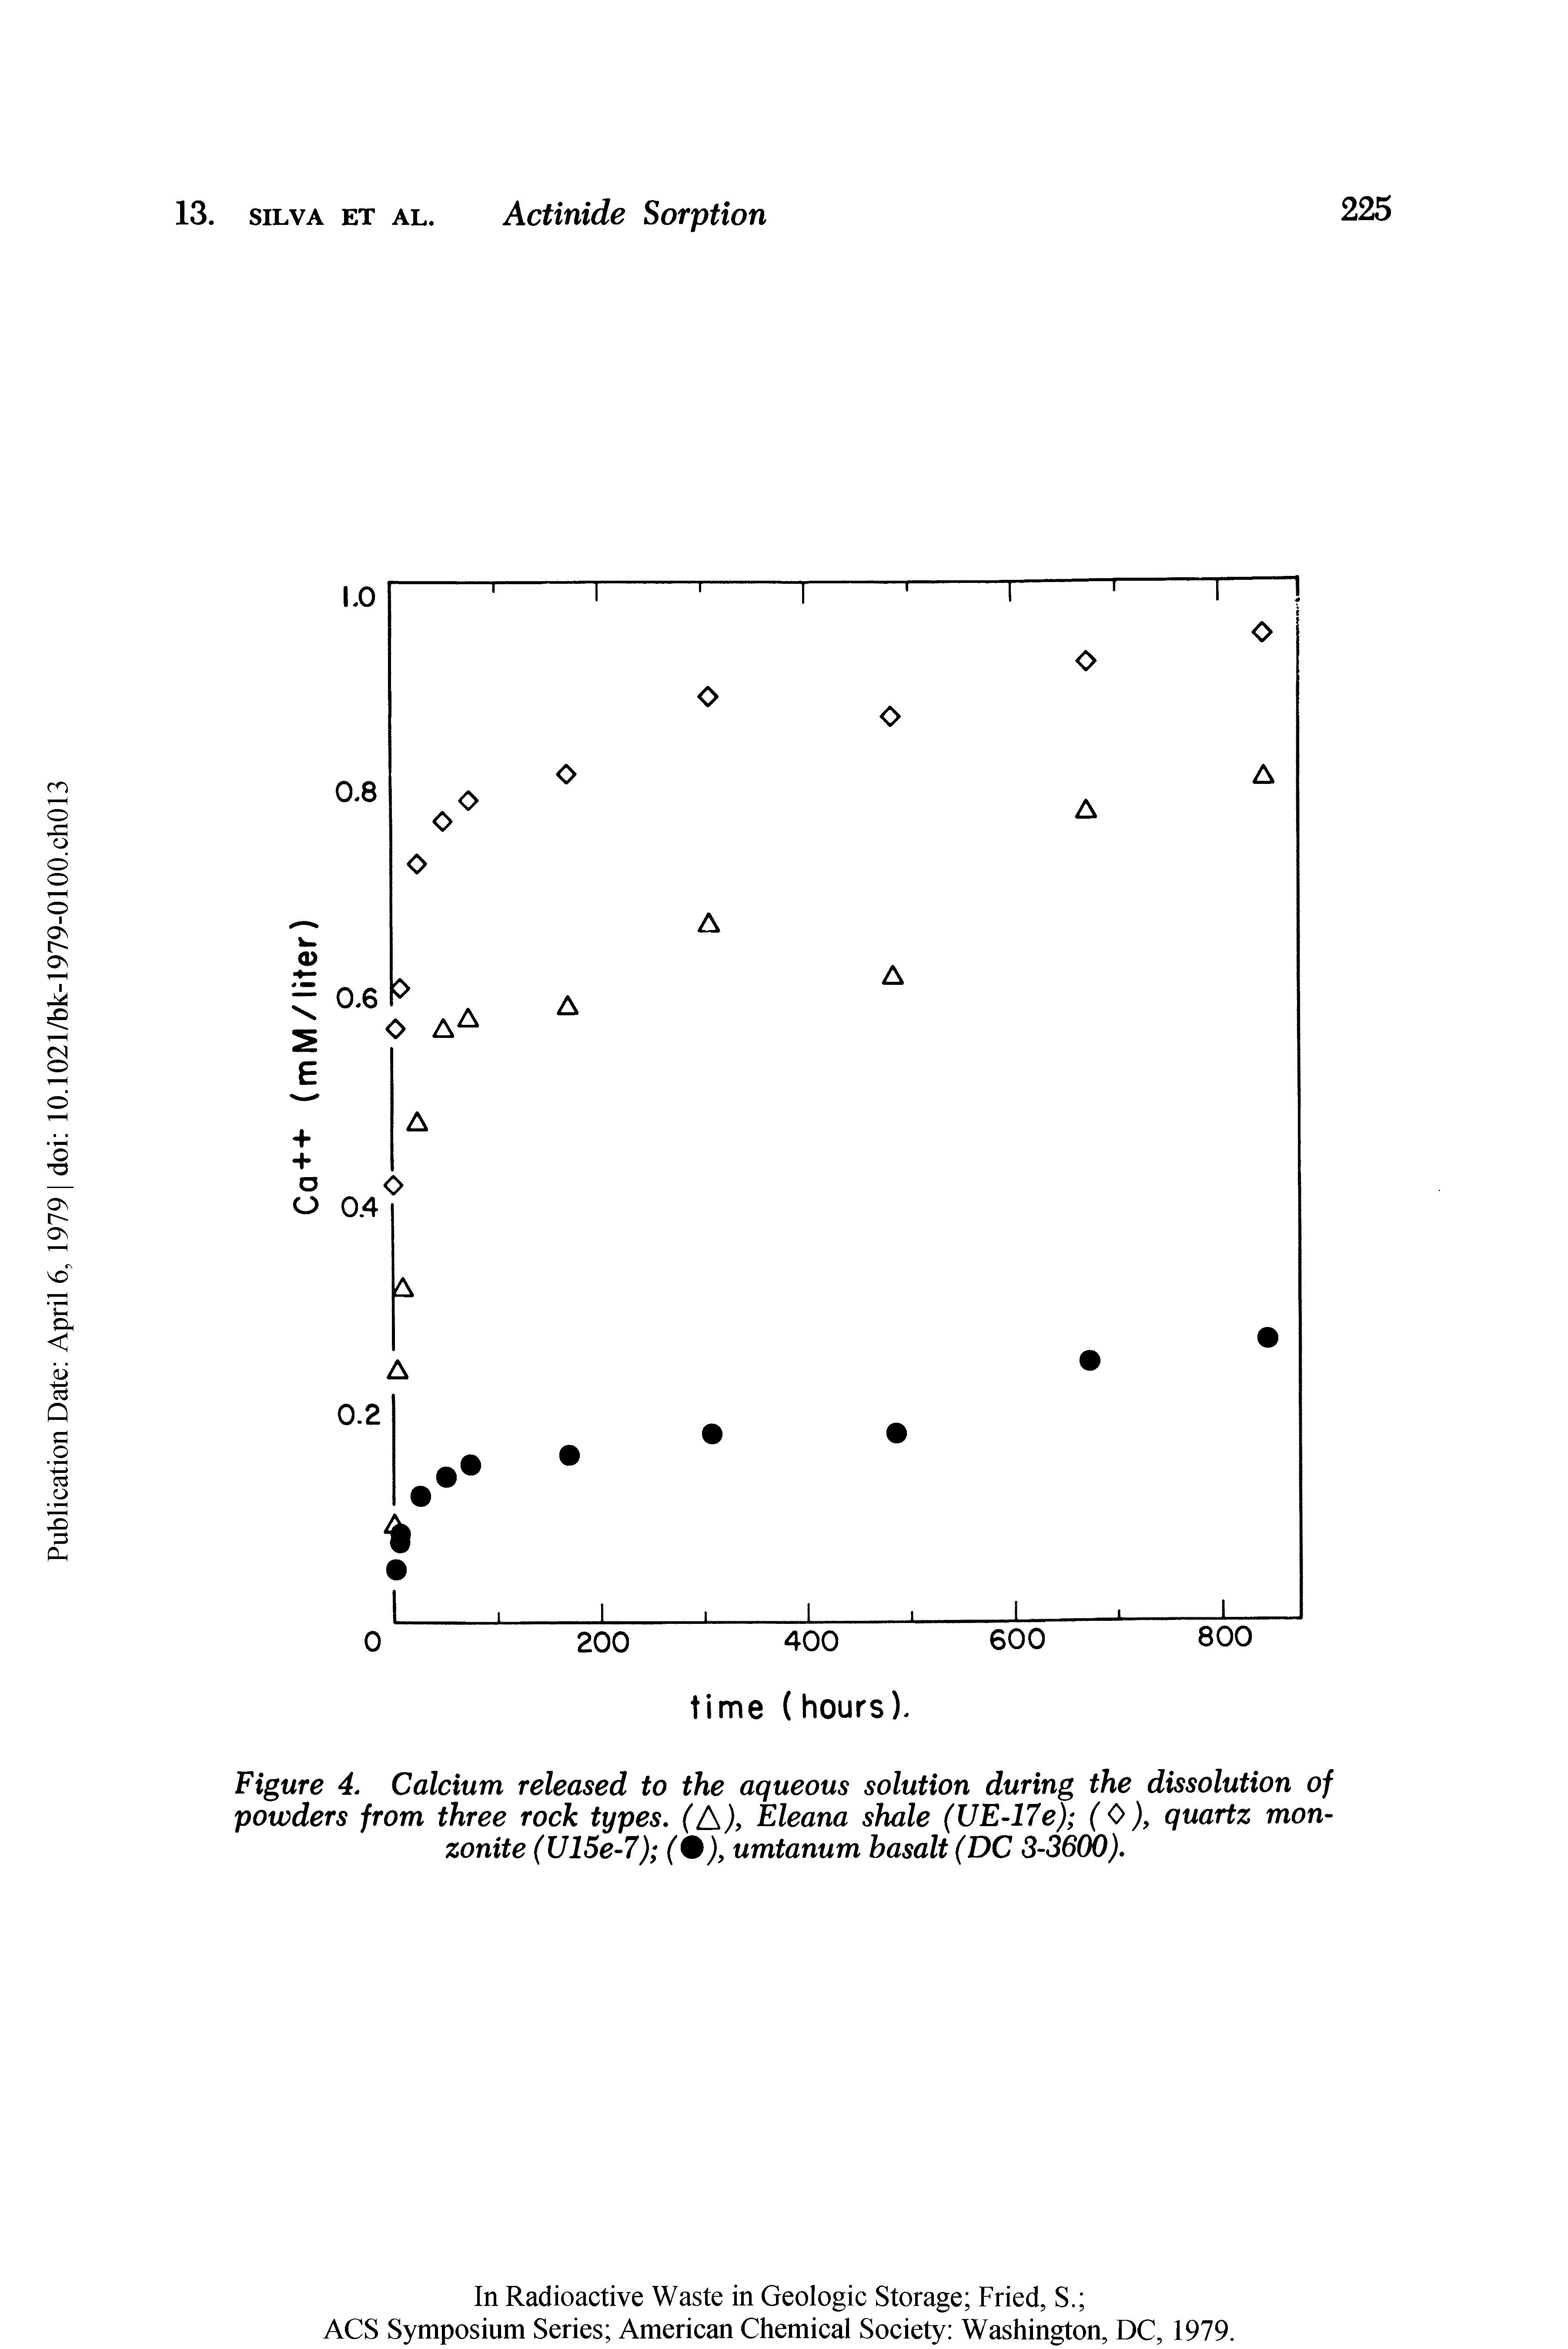 Figure 4. Calcium released to the aqueous solution during the dissolution of powders from three rock types. fA , Eleana shale (UE-17e) (0), quartz monzonite (V15e-7) (9), umtanum basalt (DC 3-3600).